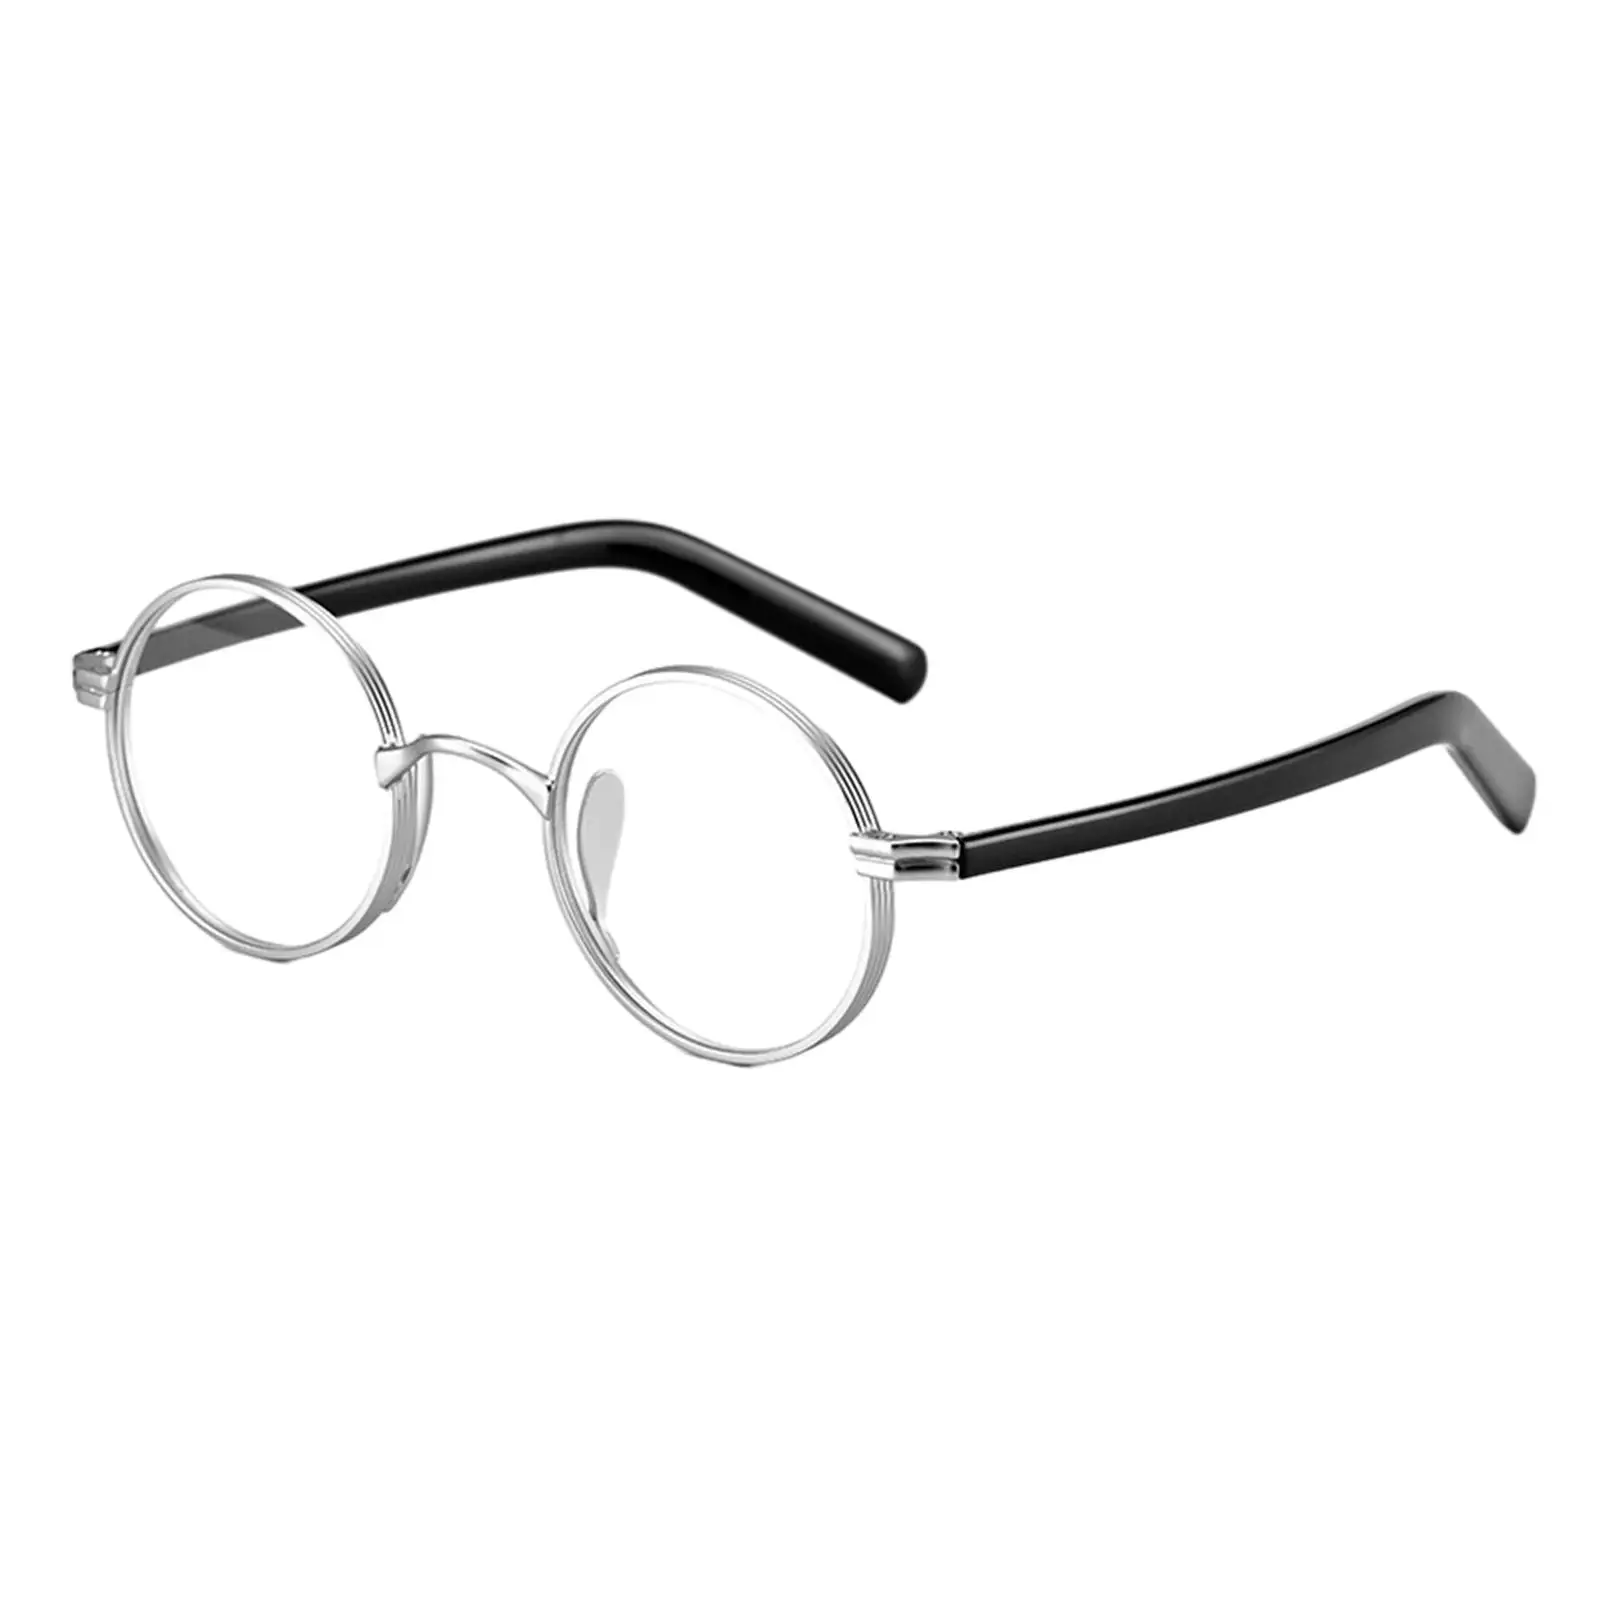 Glasses Frames Comfortable to Wear Full Rim Classical Retro Ultralight for Men Women Round Eyeglasses Frames Eyeglass Frame